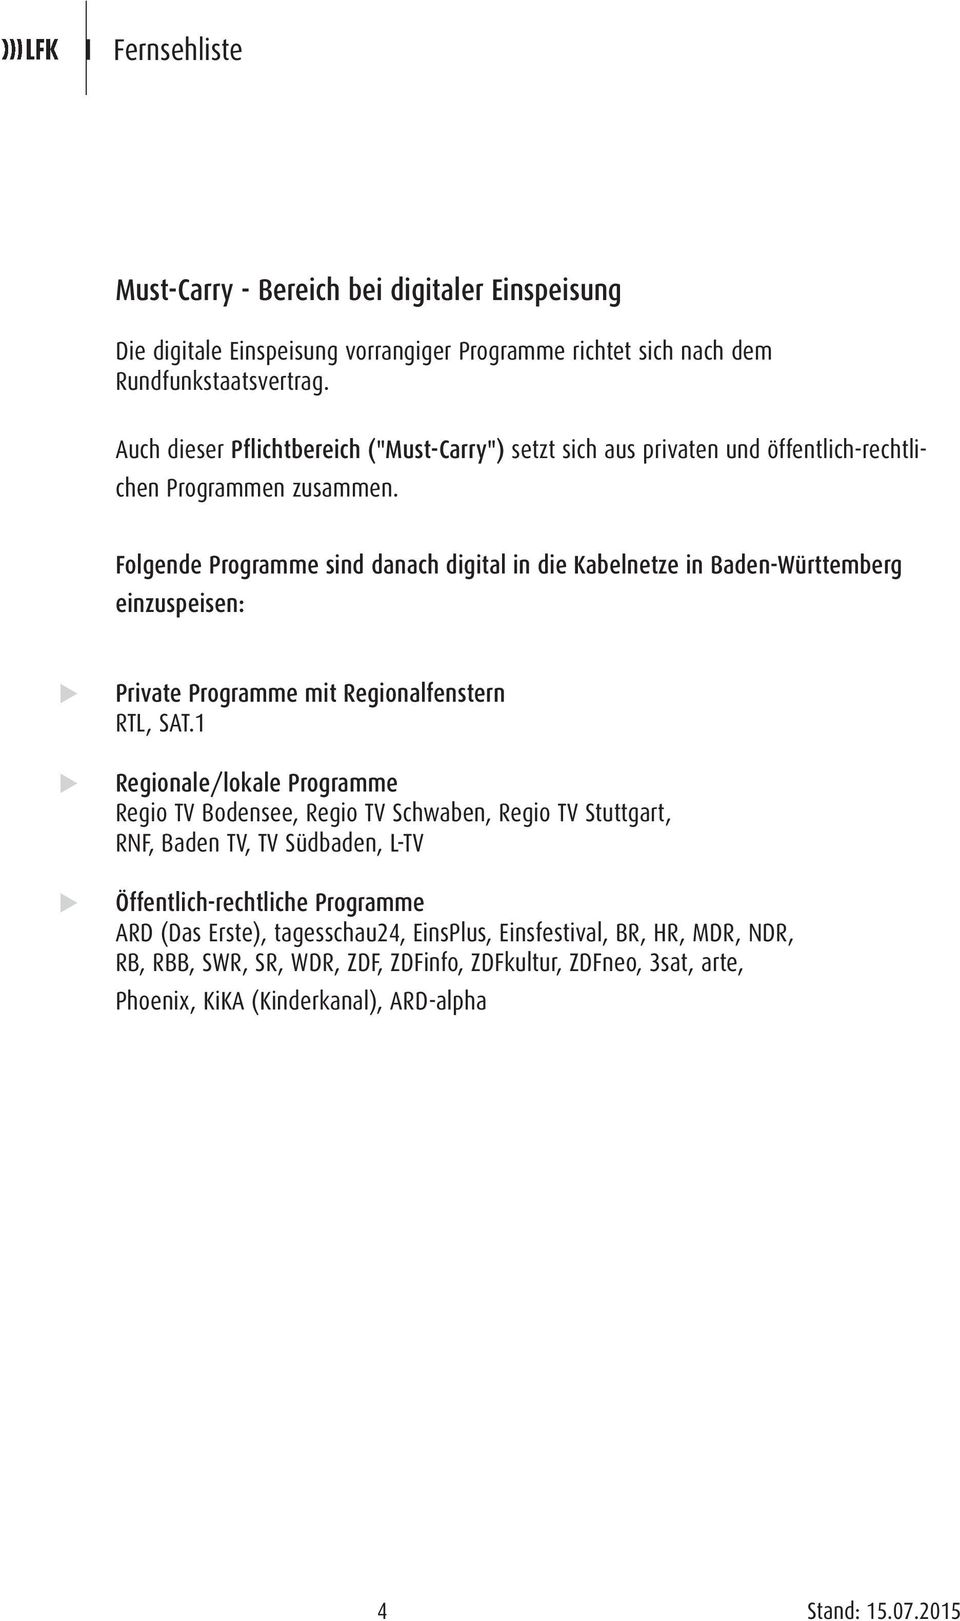 Folgende Programme sind danach digital in die Kabelnetze in Baden-Württemberg einzuspeisen: Private Programme mit Regionalfenstern RTL, SAT.